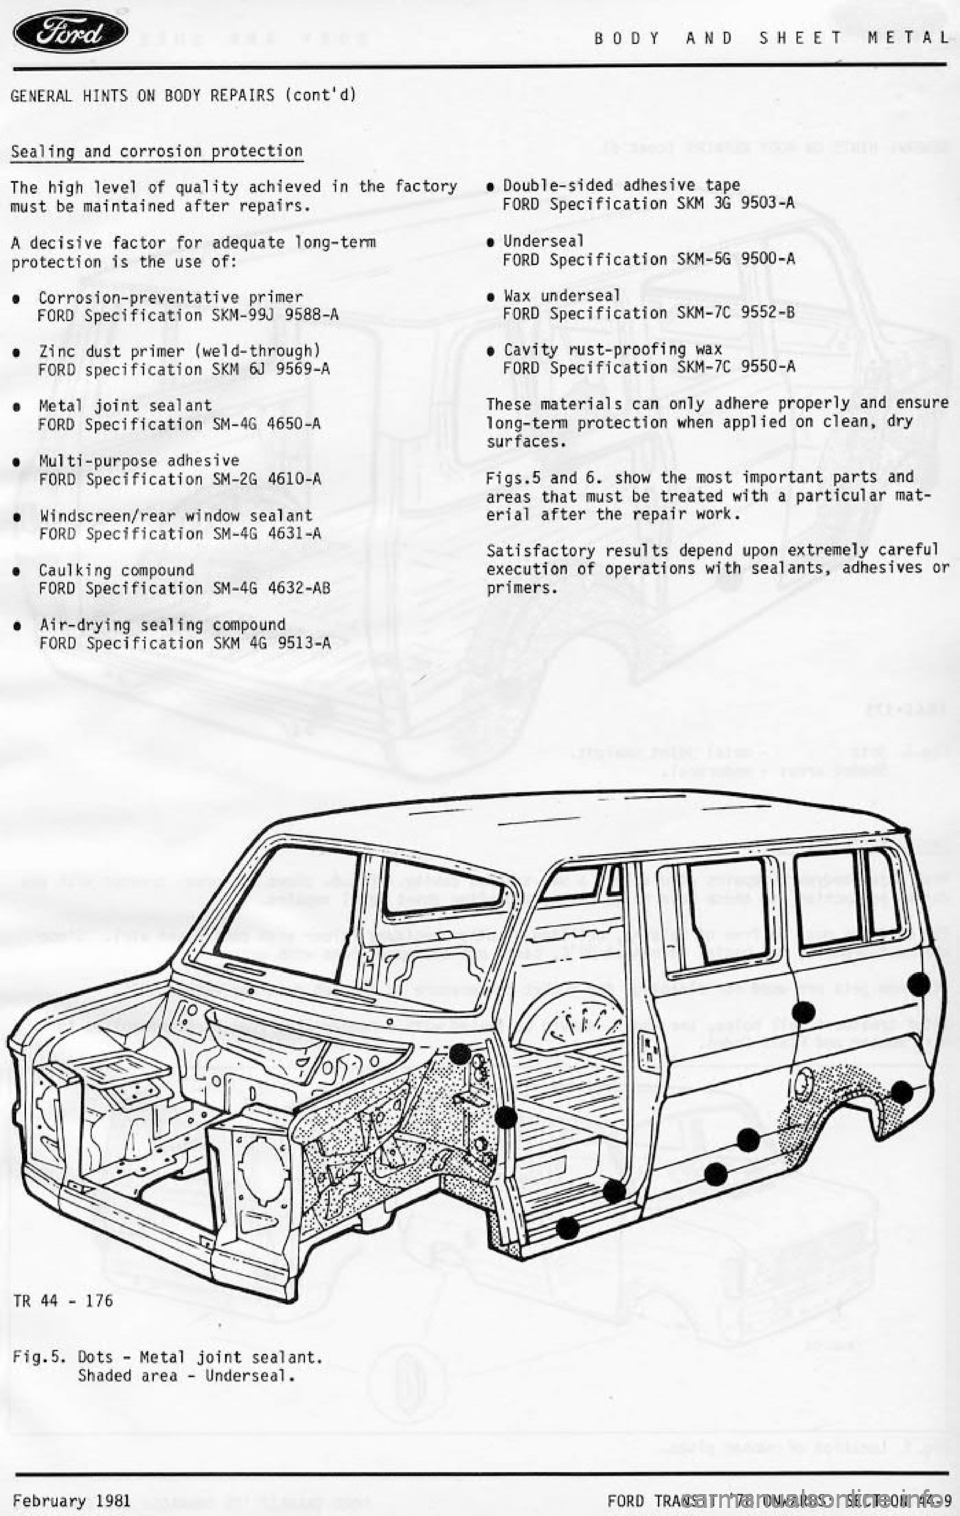 FORD TRANSIT 1978  Service Repair Manual 